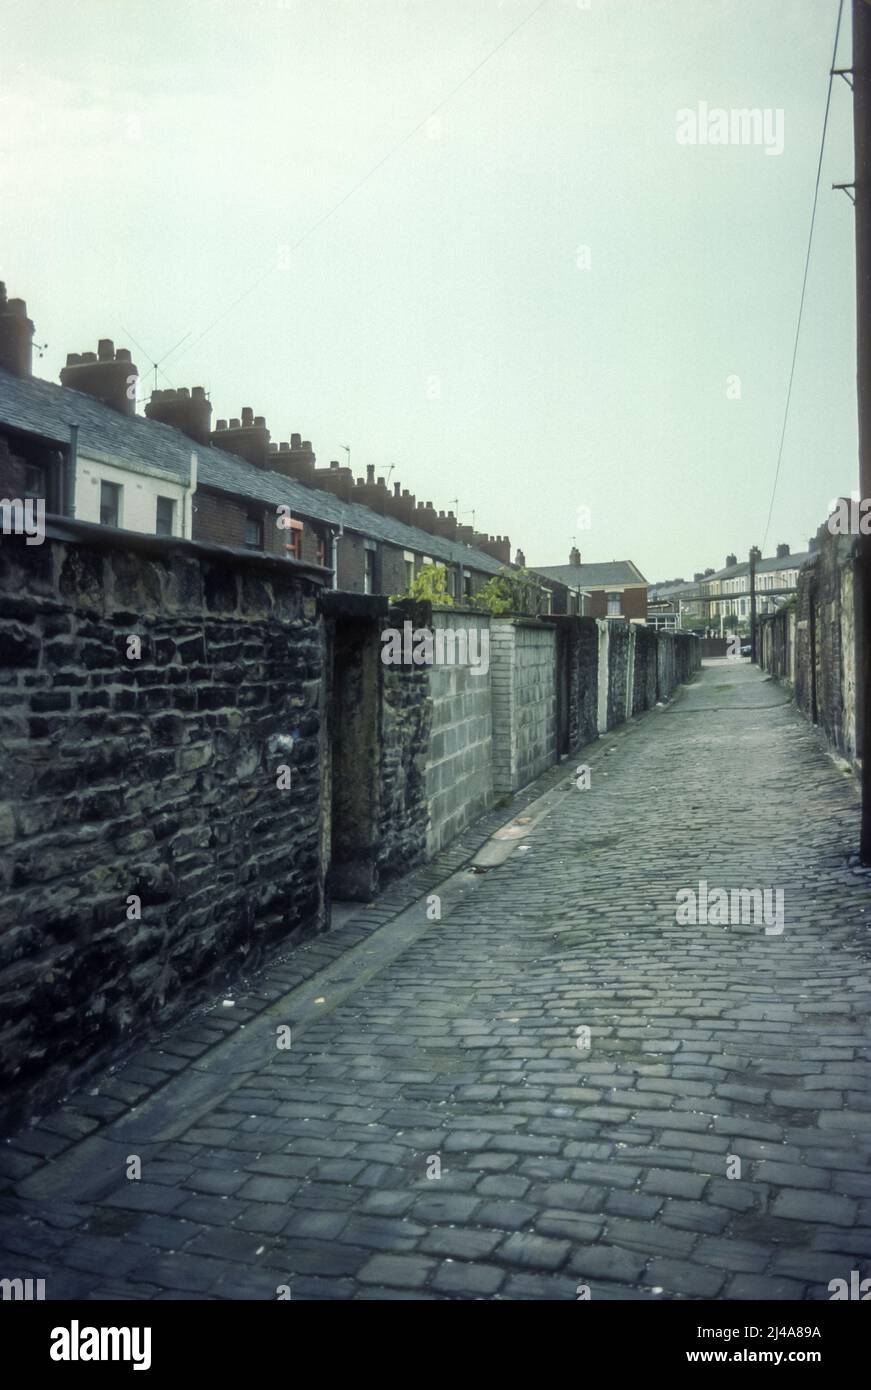 1970s immagine d'archivio di case terrazzate e un vicolo acciottolato a Blackburn, Lancashire. Foto Stock